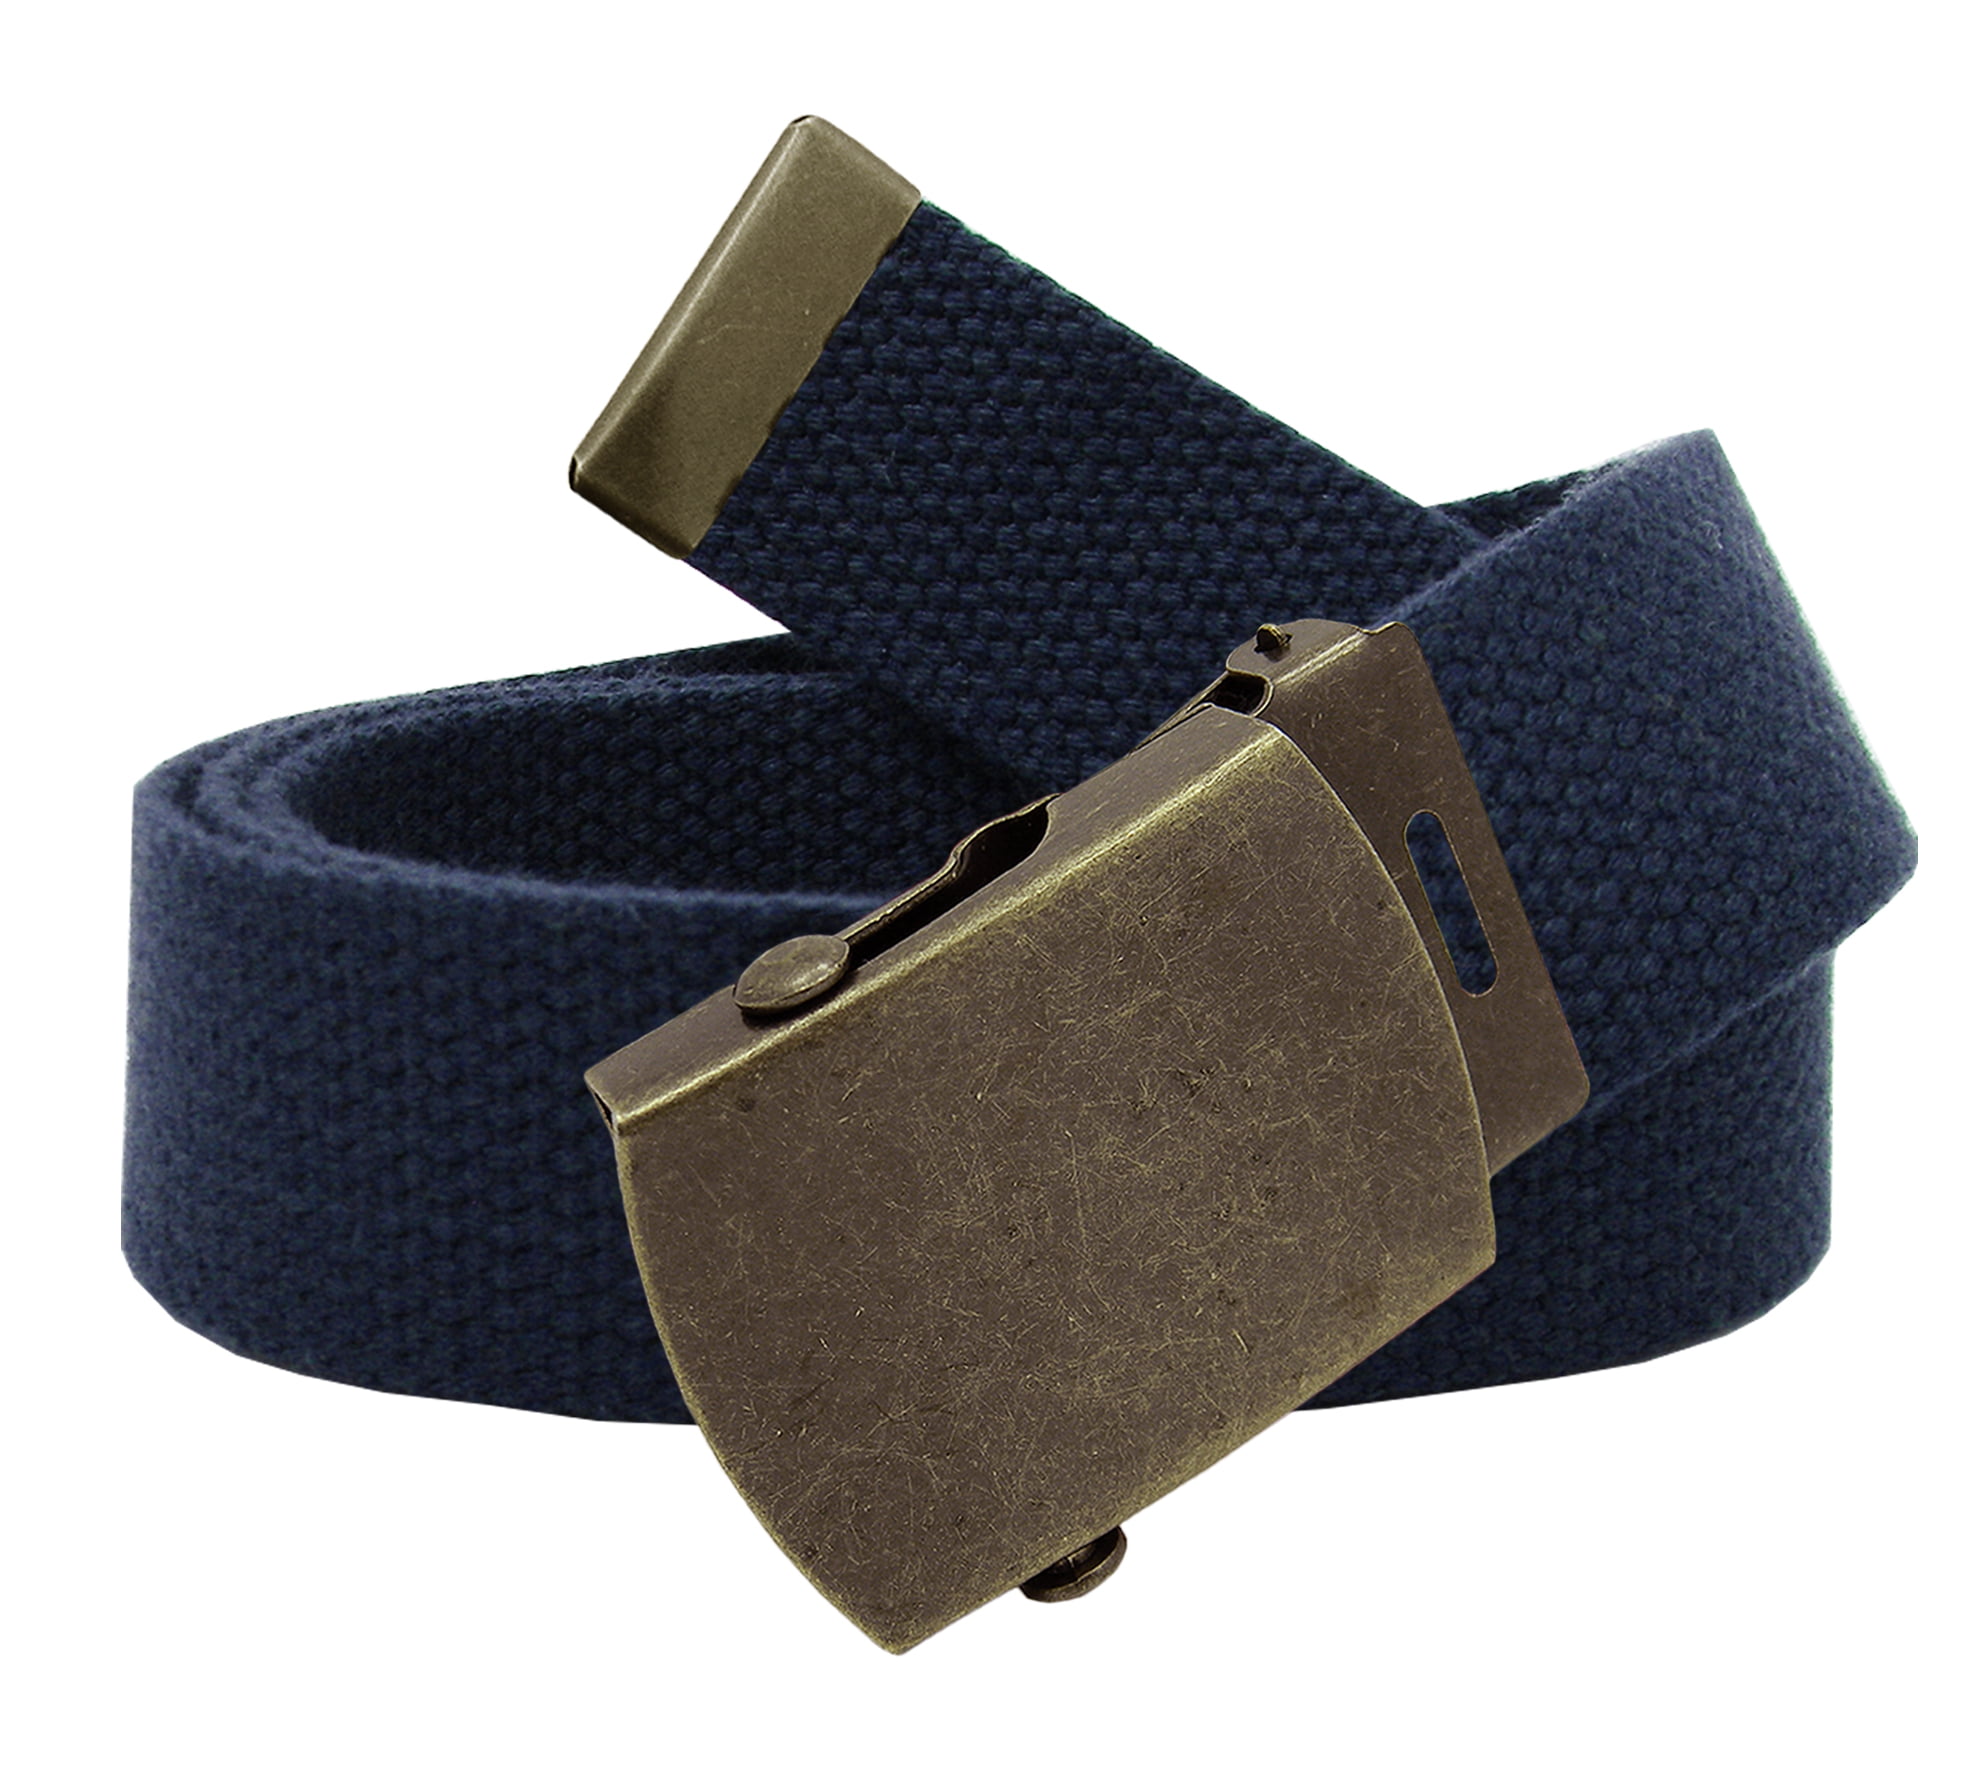 Boy's Cub Scout Uniform Belt Flip Top or Slider Buckle Adjustable Navy Web Belt 